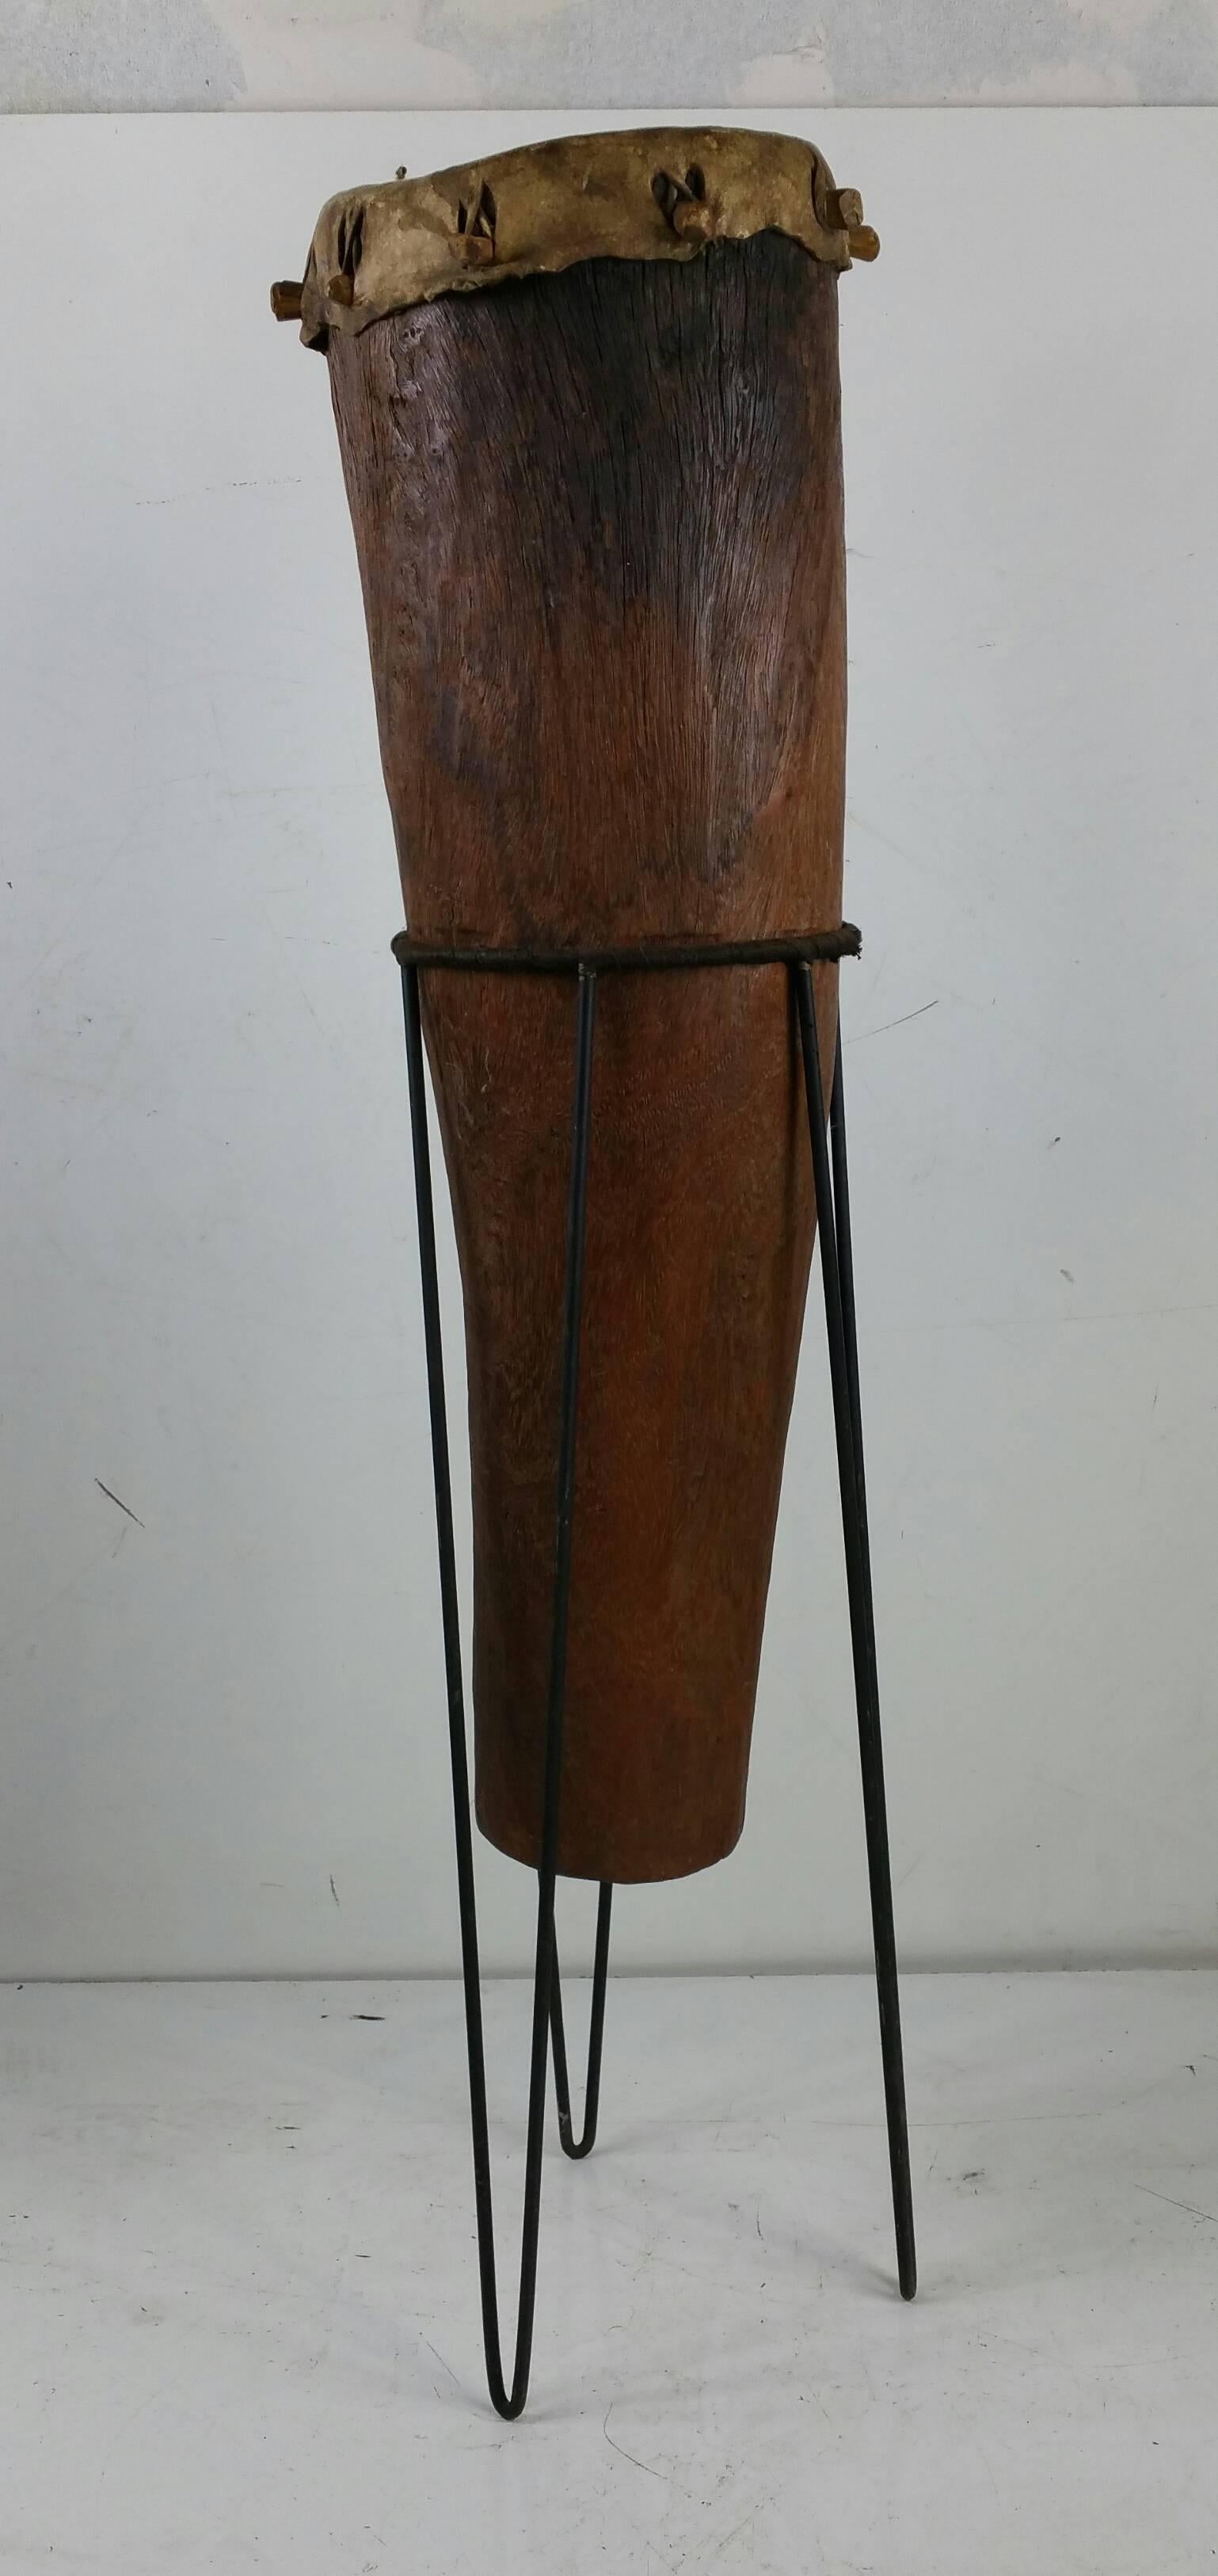 Tambour africain ancien, fabriqué à la main, support en fer moderniste, fonctionnel, son étonnant et belle sculpture.